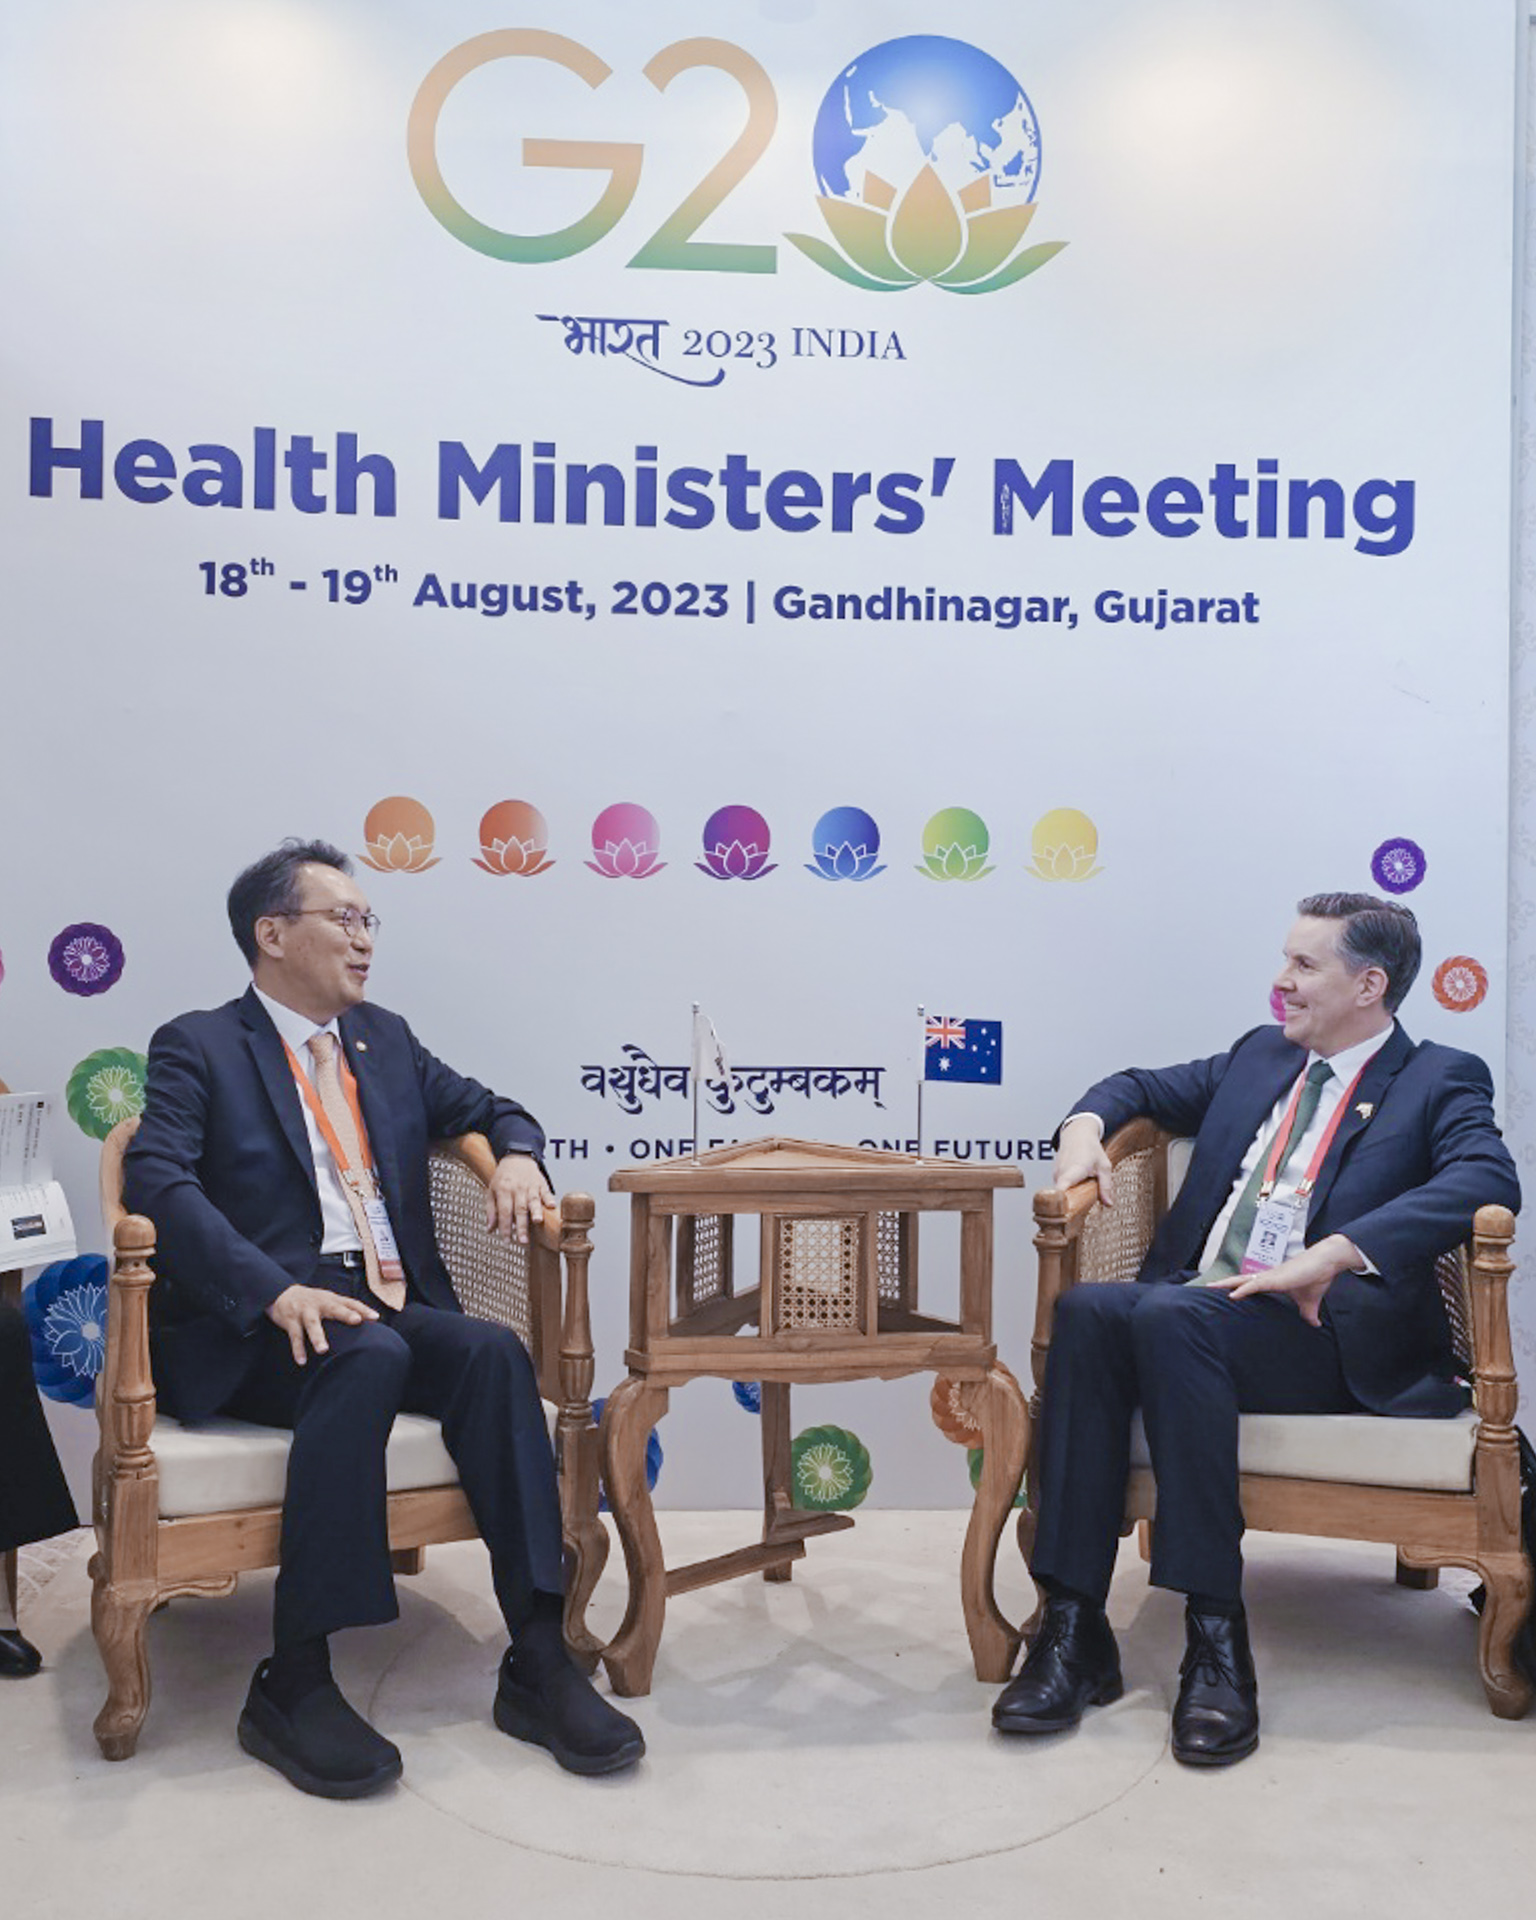 보건복지부 제2차관, 주요 20개국(G20) 회의에서 보건분야 협력 방안 논의